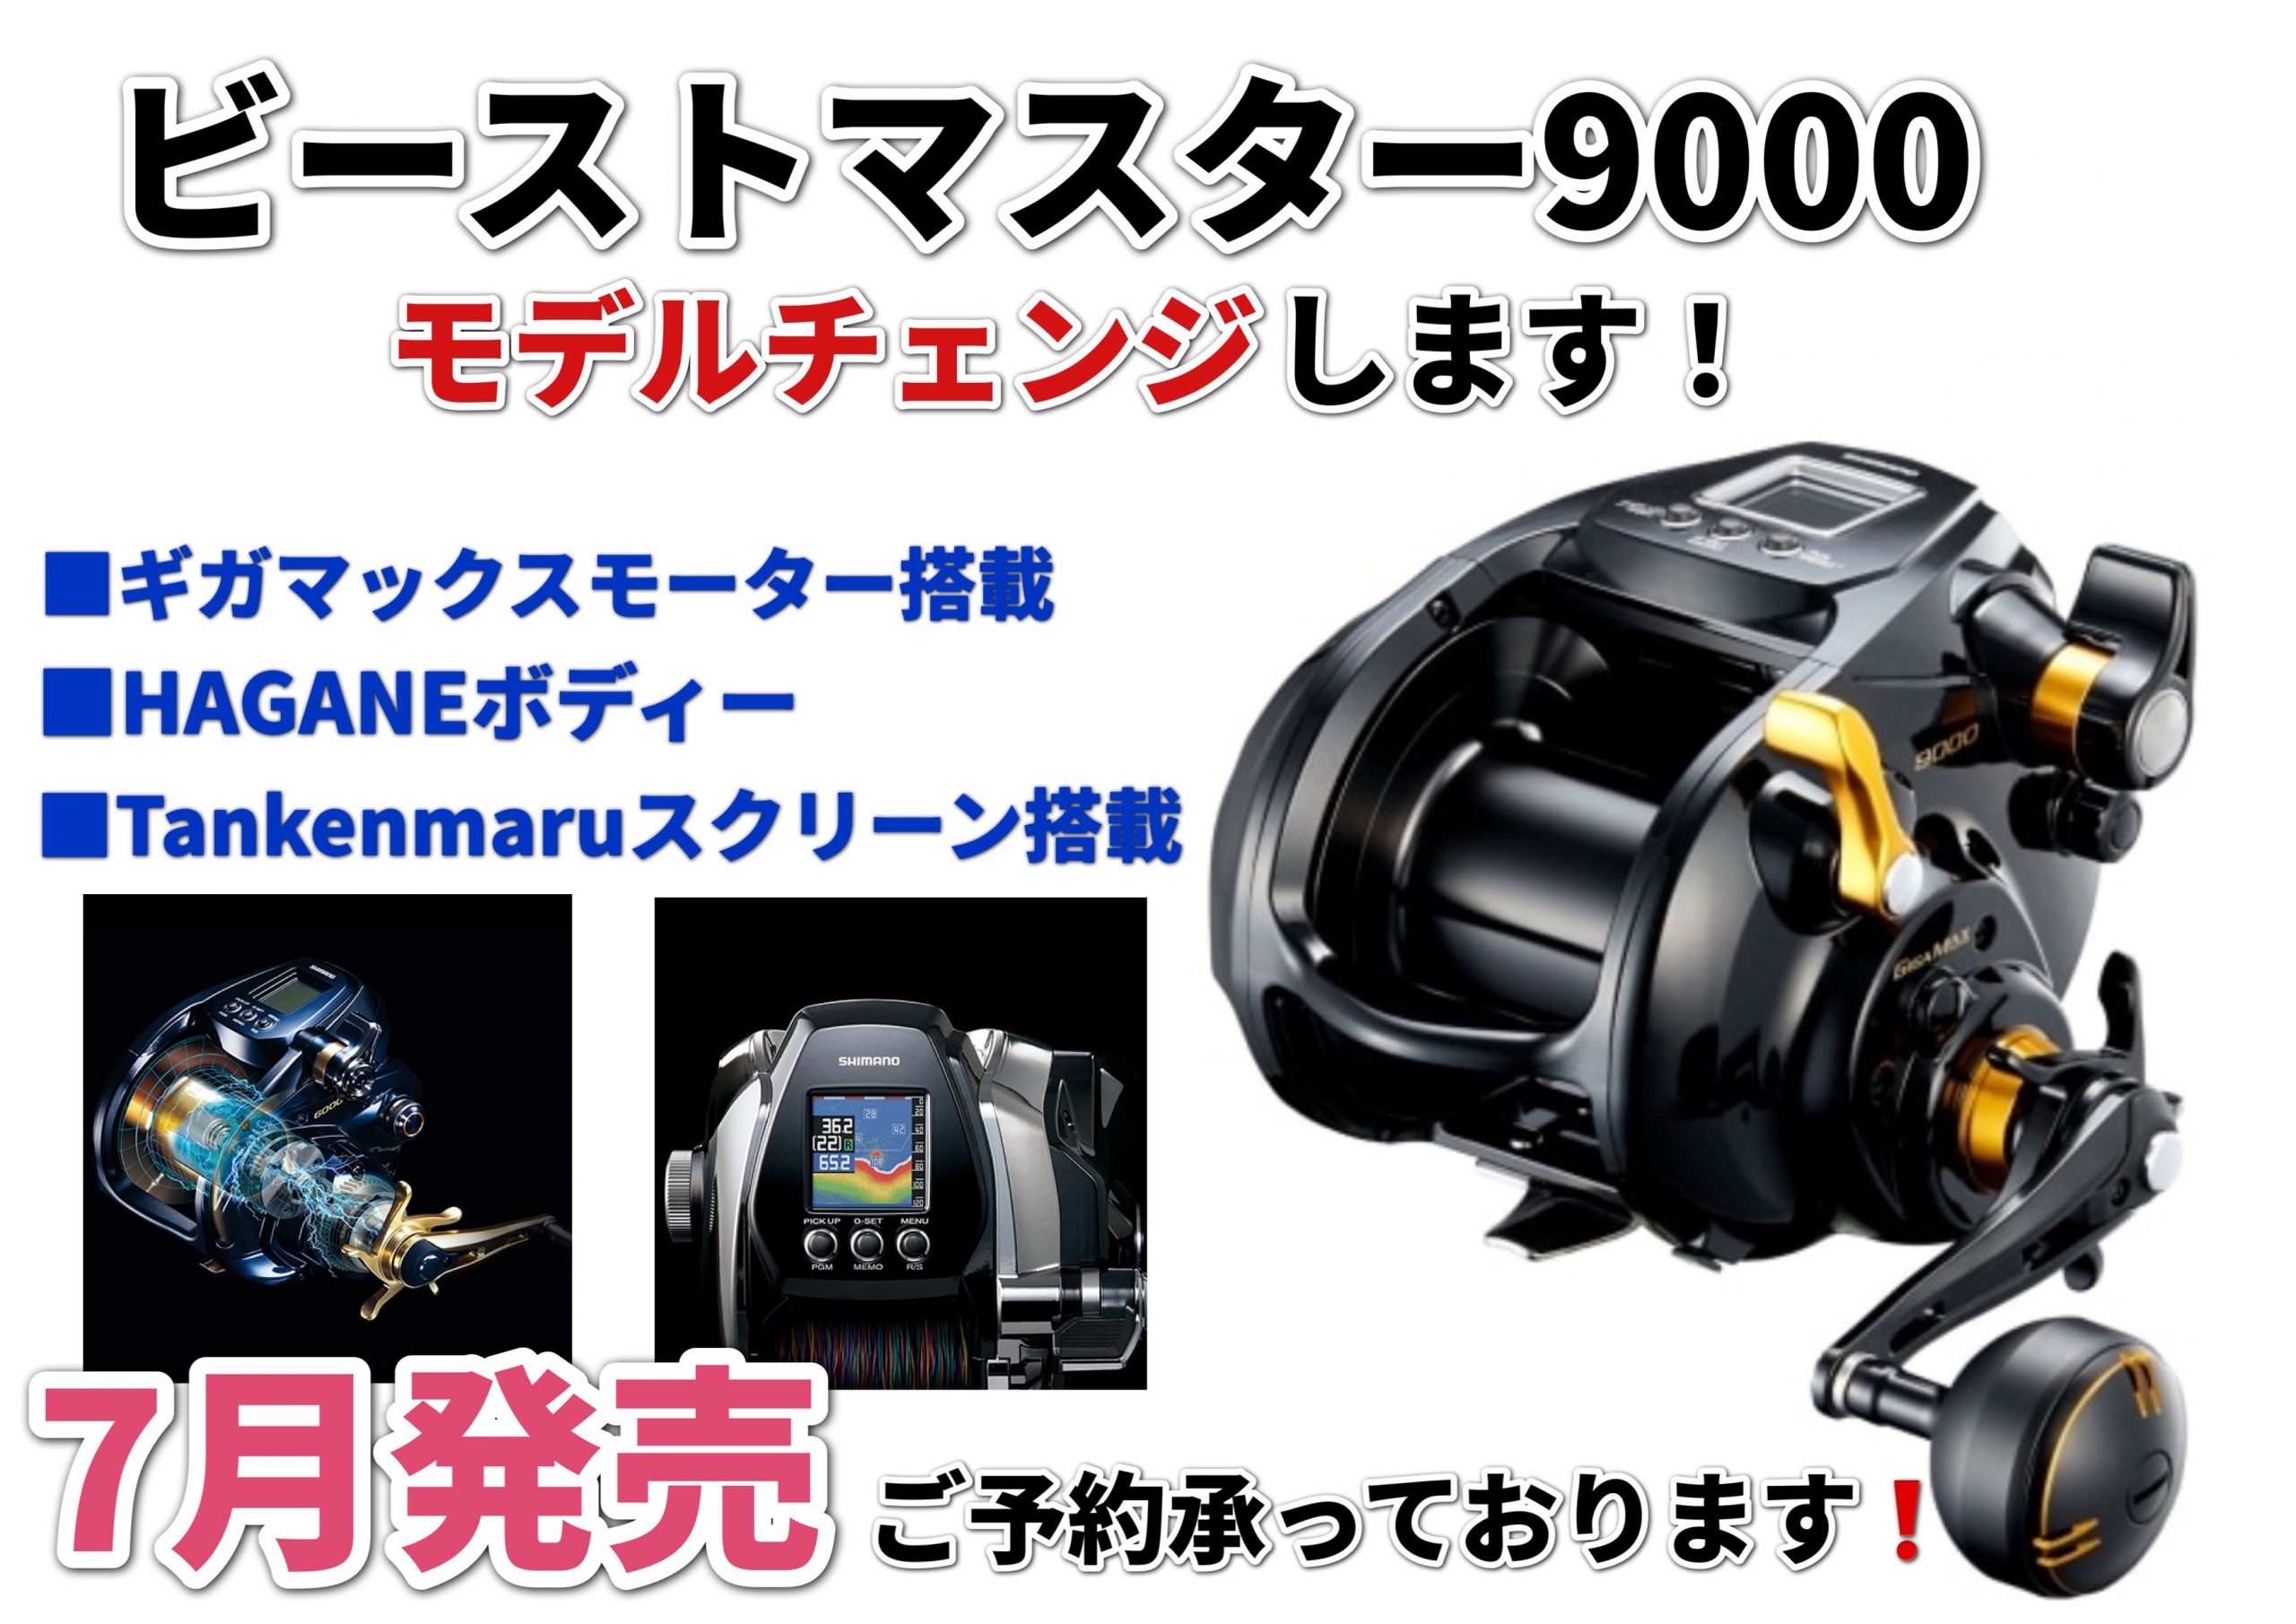 シマノ(SHIMANO) 22ビーストマスター 9000